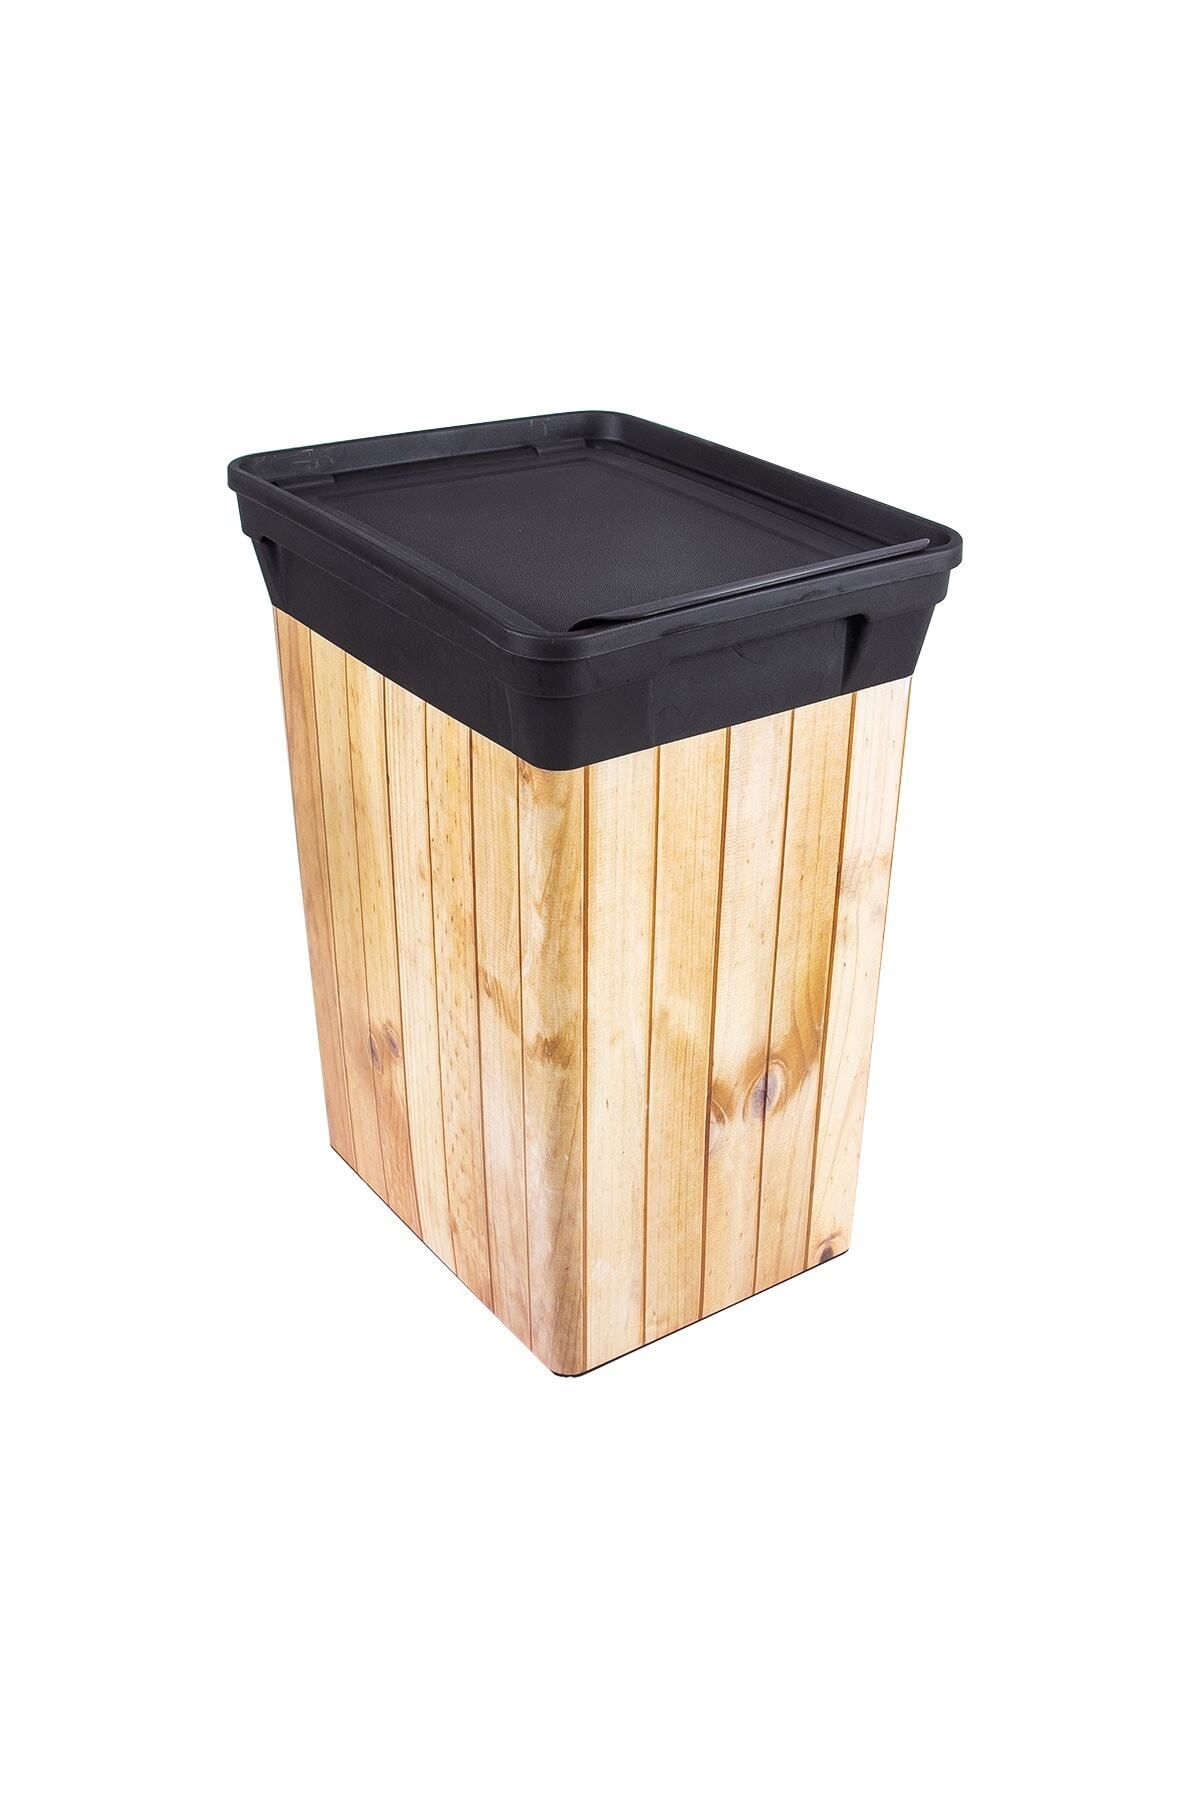 QUTU Trashbın Wood 10 l Çöp Kovası